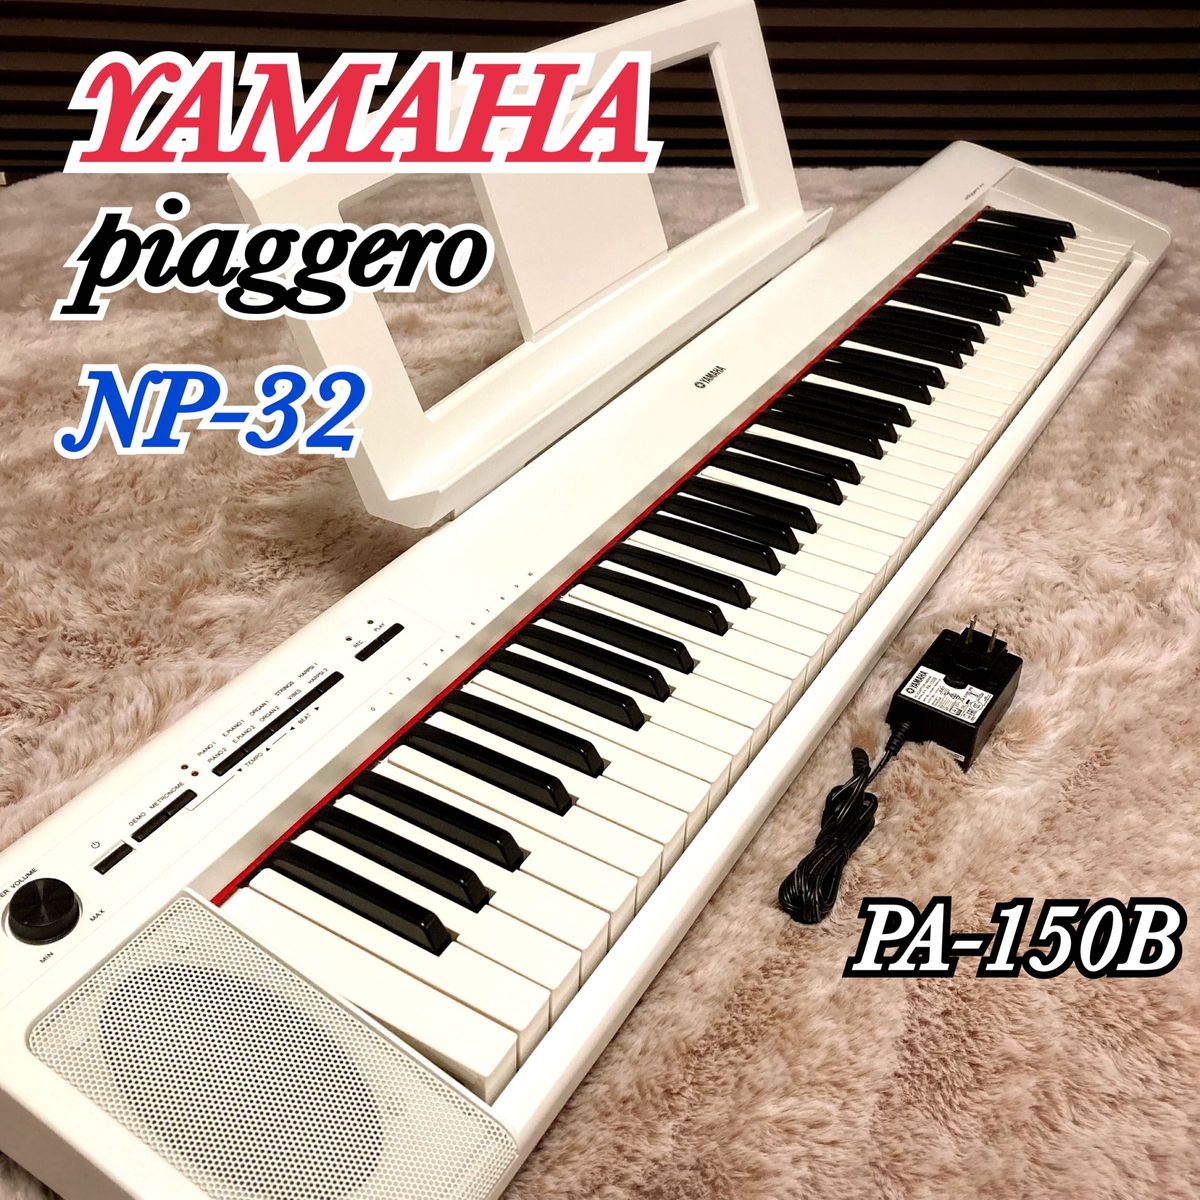 YAMAHA ヤマハ piaggero ピアジェーロ NP-32 電子ピアノ キーボード 76